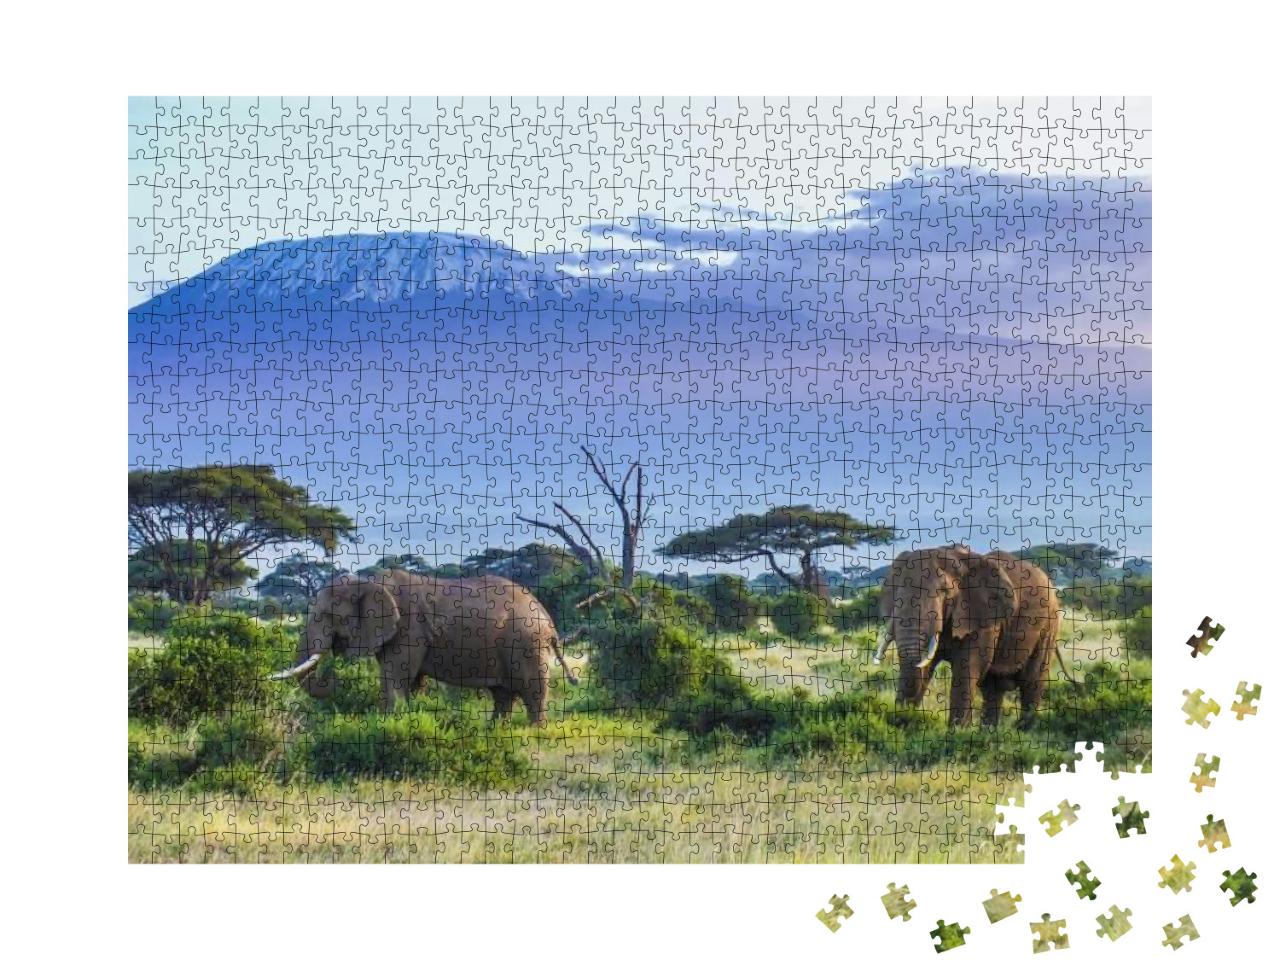 Puzzle 1000 Teile „Elefanten am Kilimandscharo“